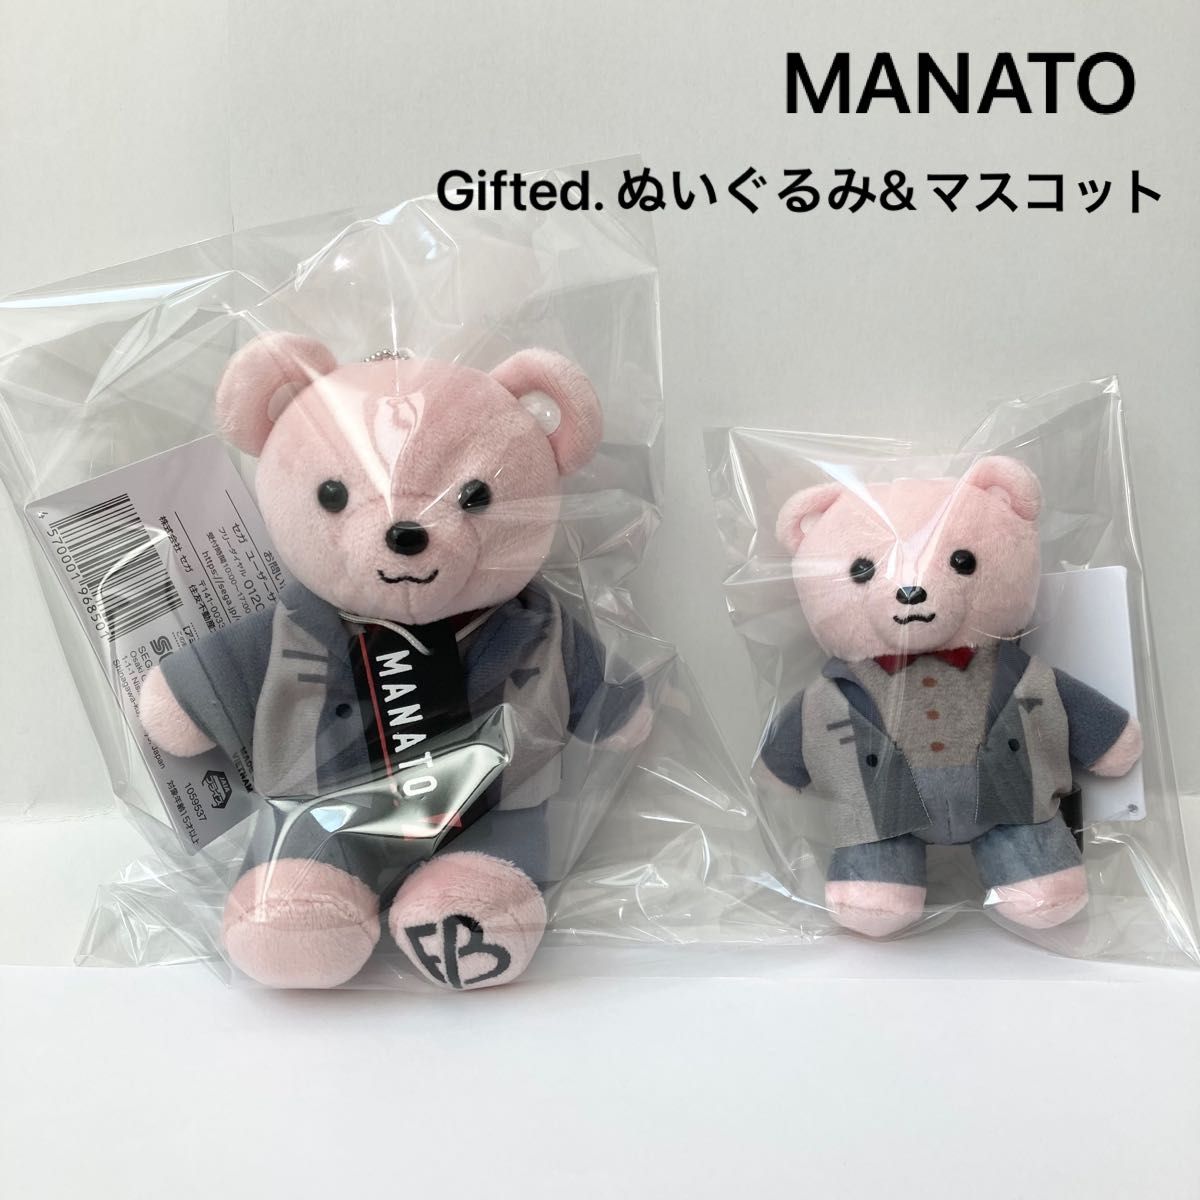 新品 BE:FIRST MANATO マナト モアプラス ぬいぐるみ マスコット セット Gifted. ピンク くま クマ